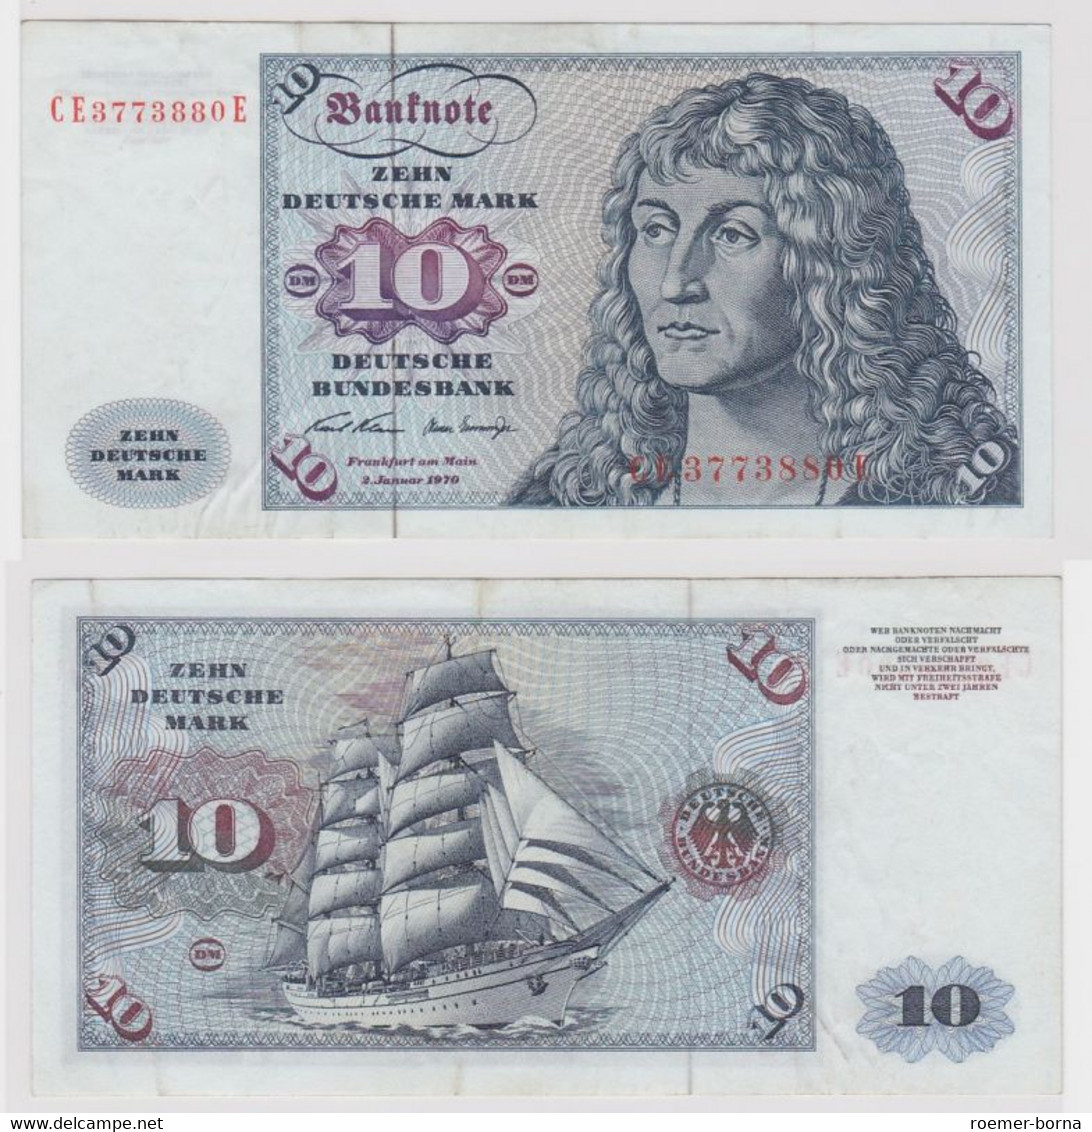 T147491 Banknote 10 DM Deutsche Mark Ro. 270b Schein 2.Jan. 1970 KN CE 3773880 E - 10 DM